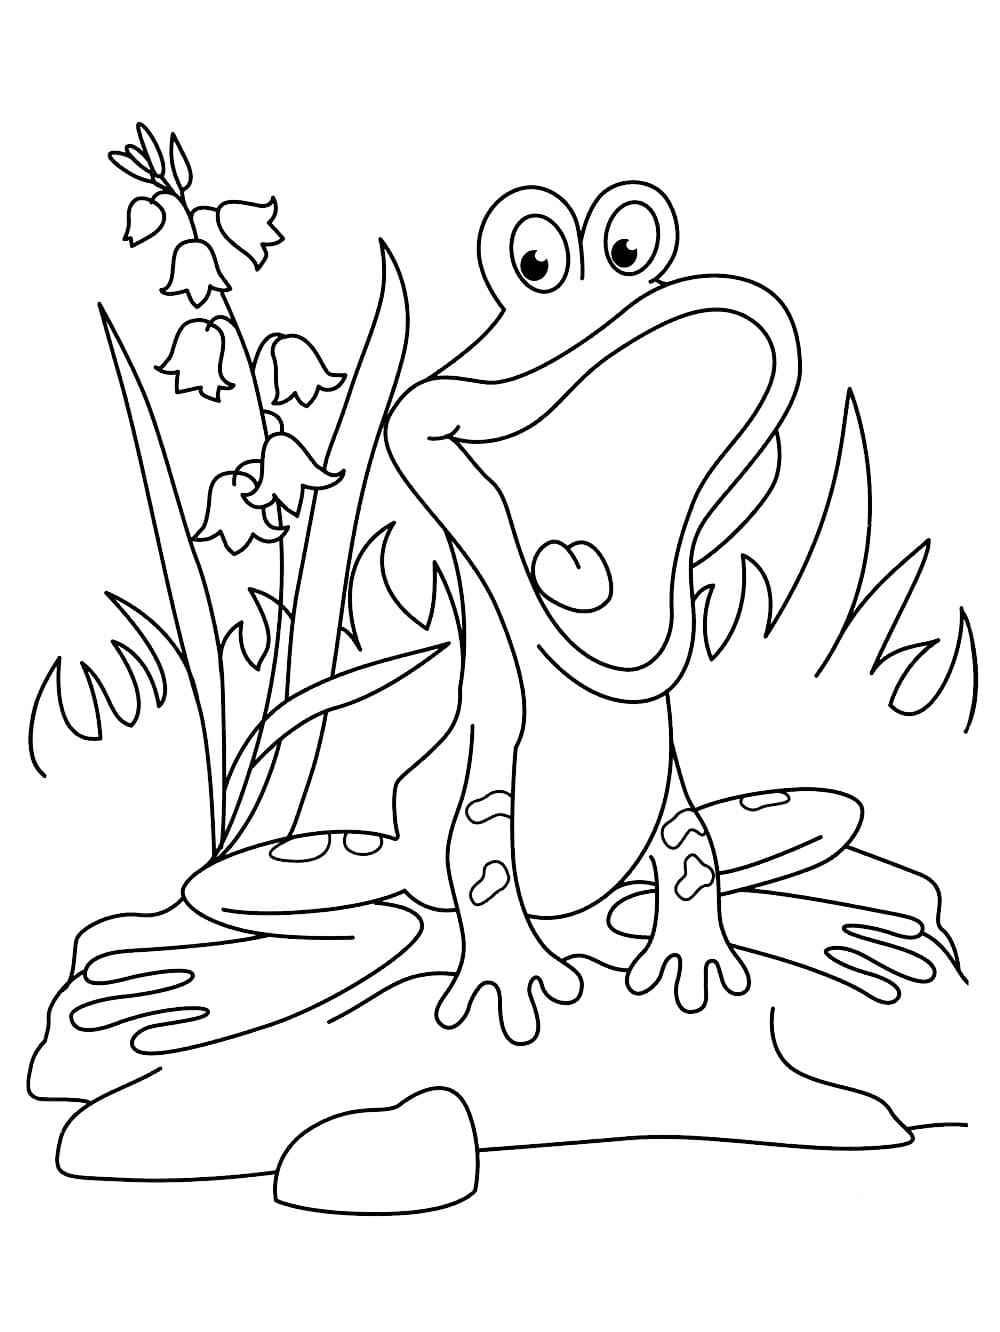 인쇄 가능한 재미있는 개구리 coloring page